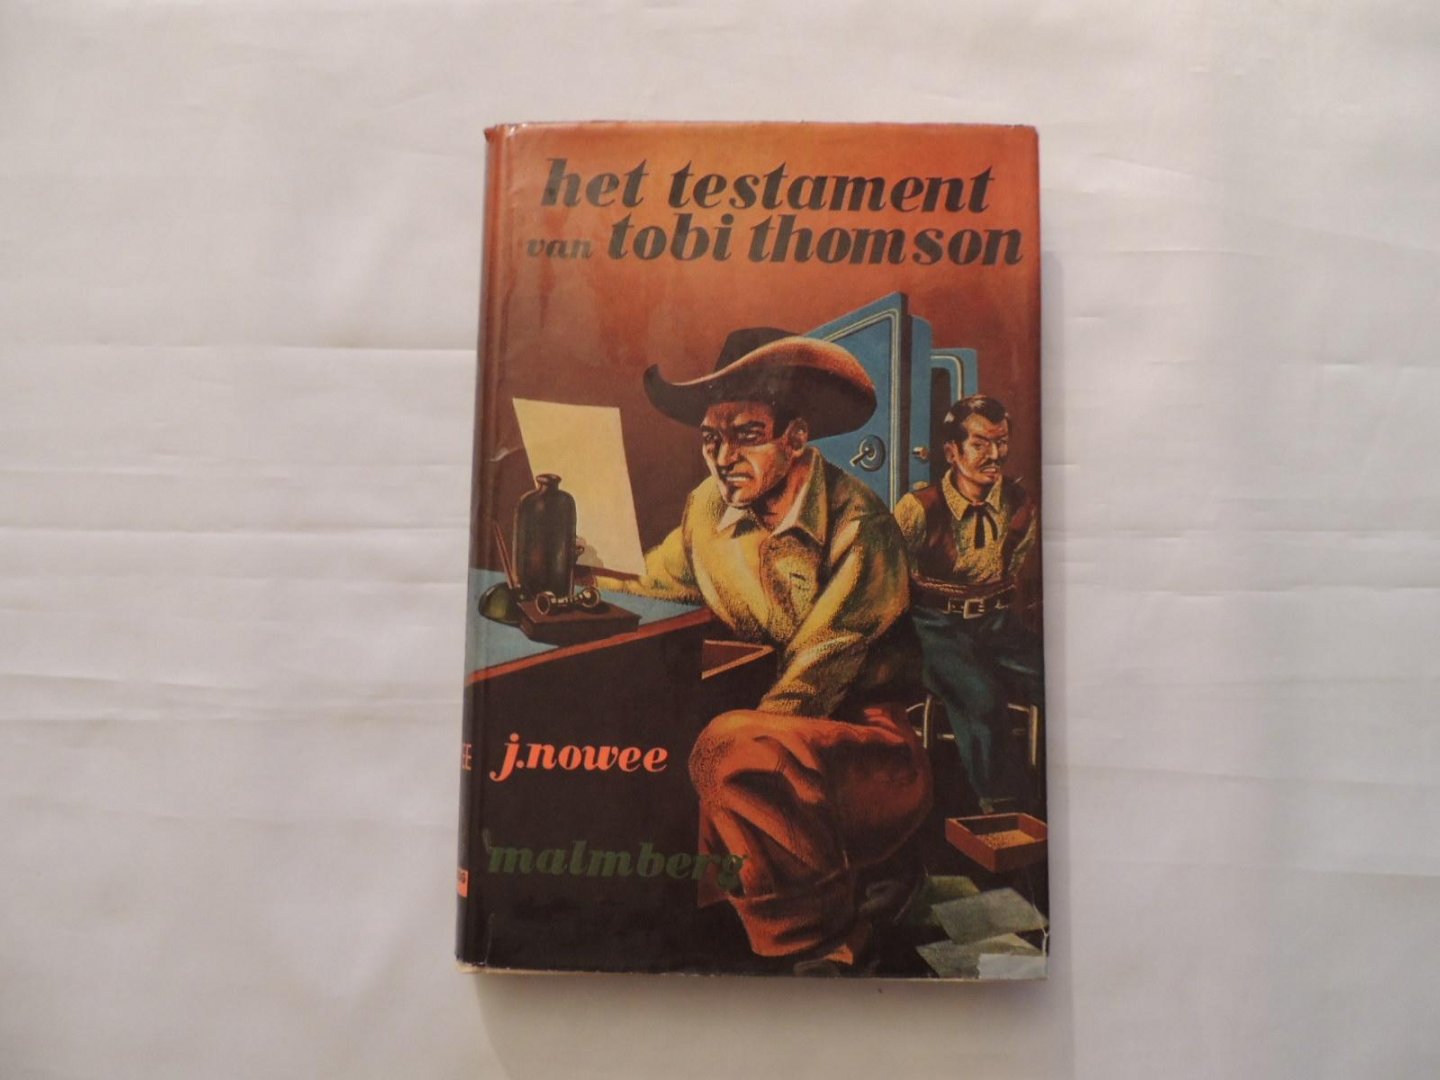 NOWEE, J. Illustraties: J. Huizinga - Het testament van Tobi Thomson - deel 14 Arendsoog